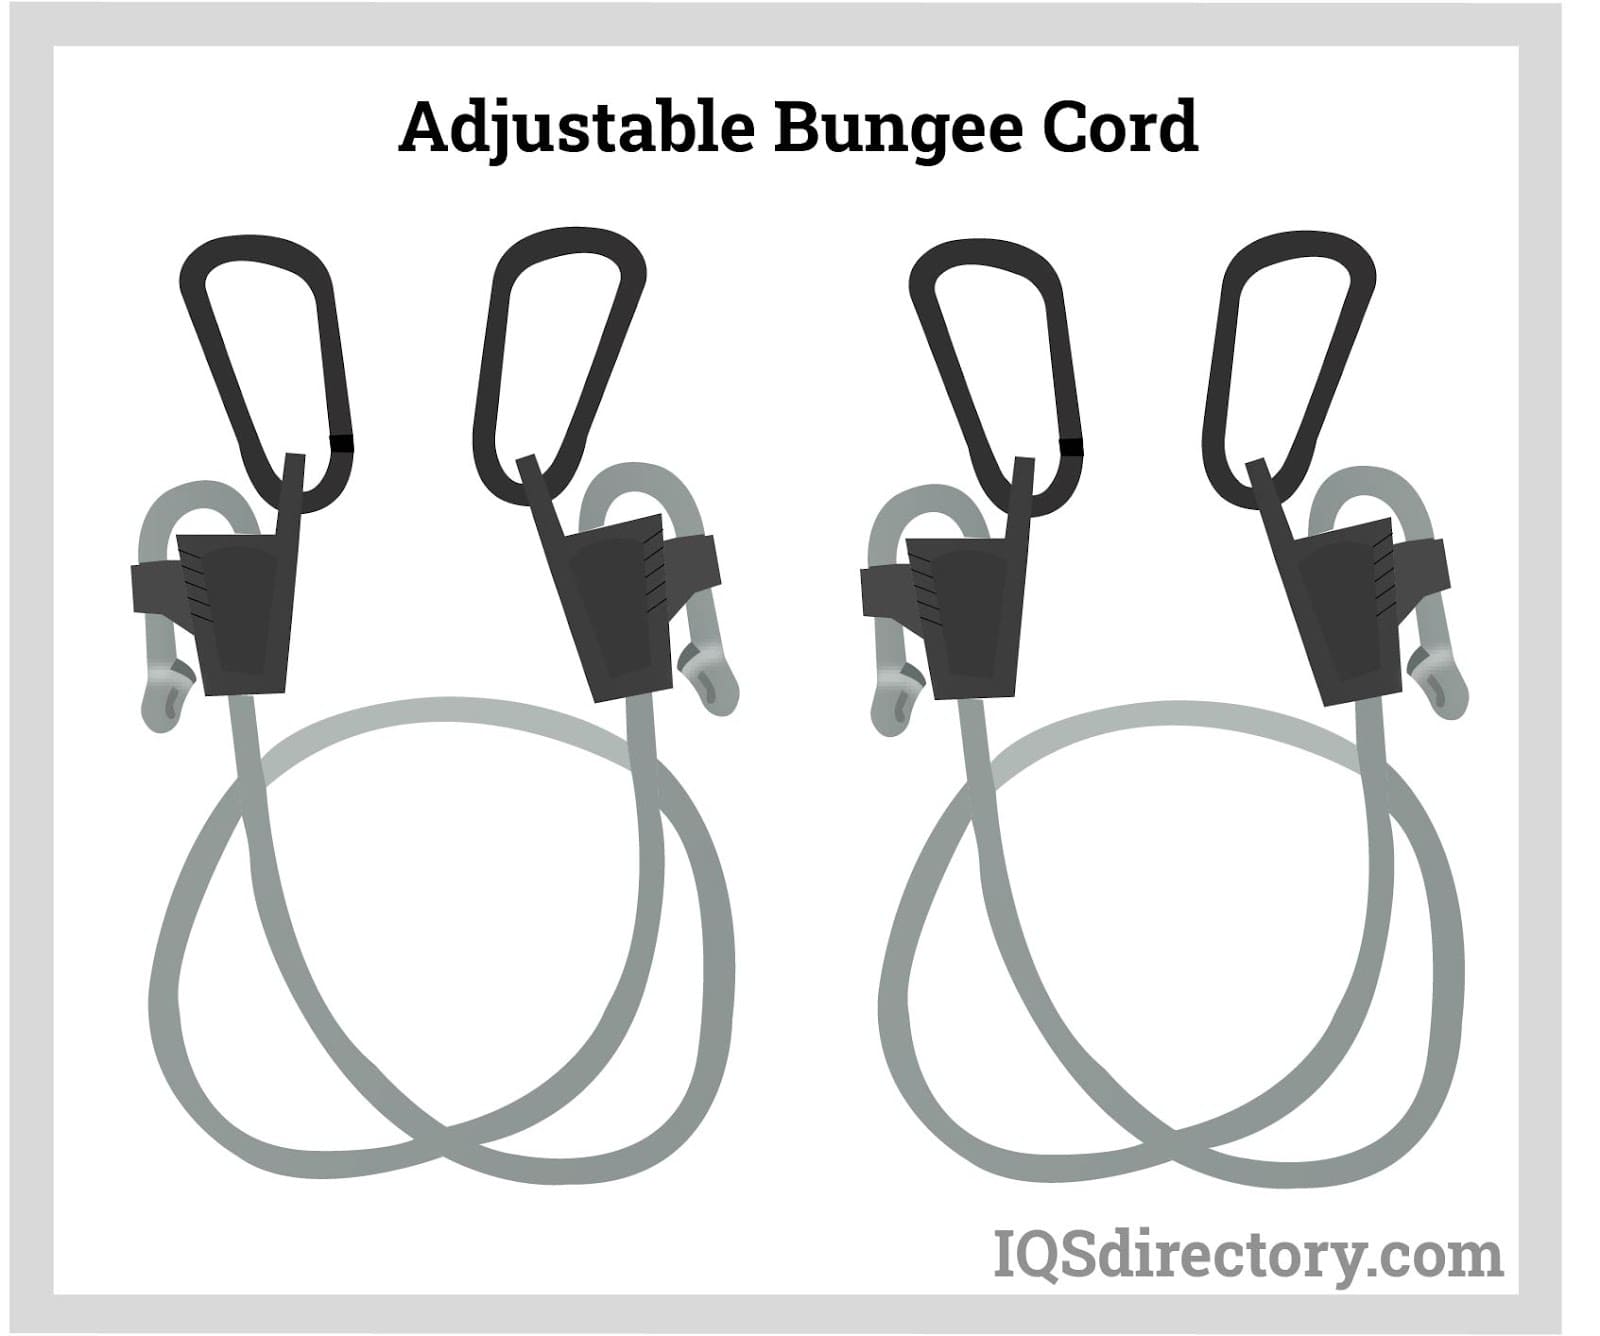 Adjustable Bungee Cord Hooks